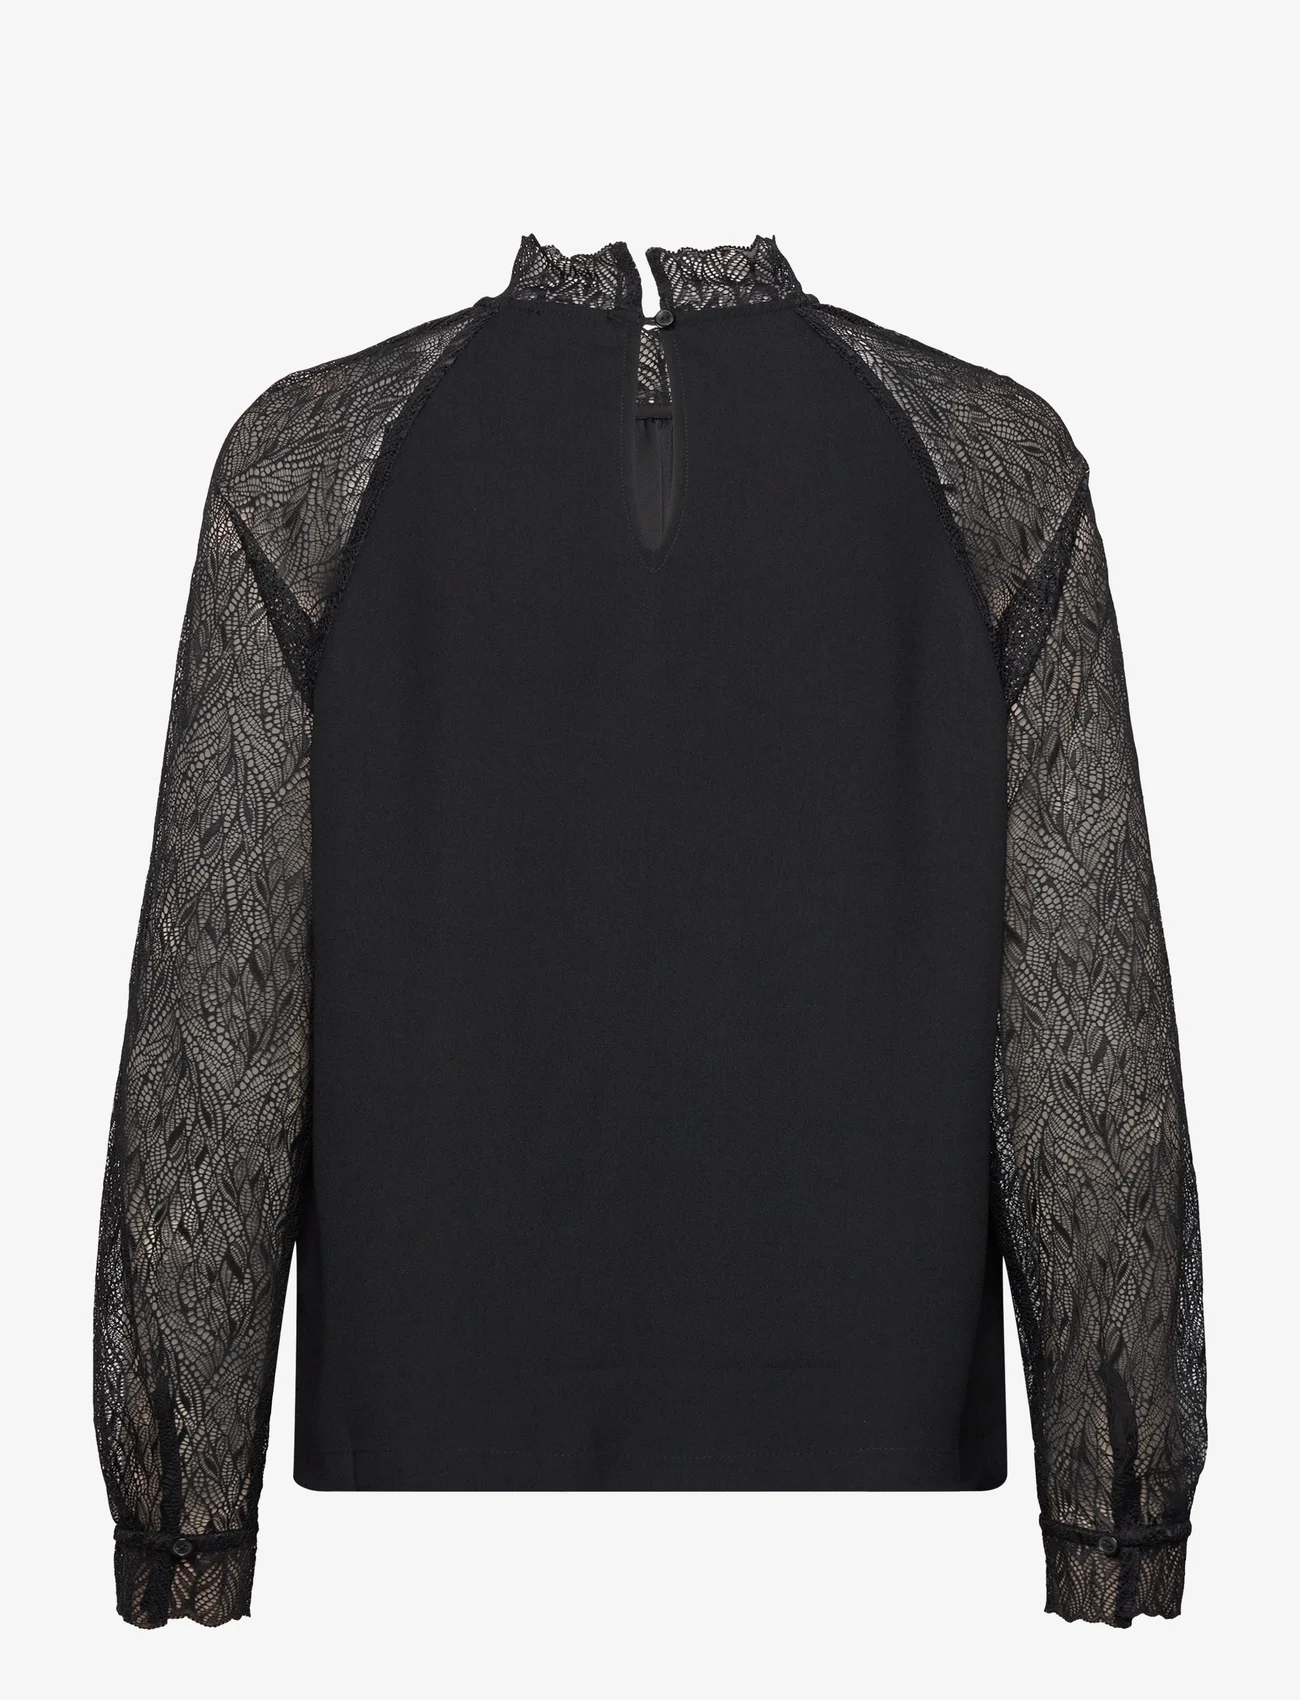 Esprit Casual - Blouses woven - langärmlige blusen - black - 1